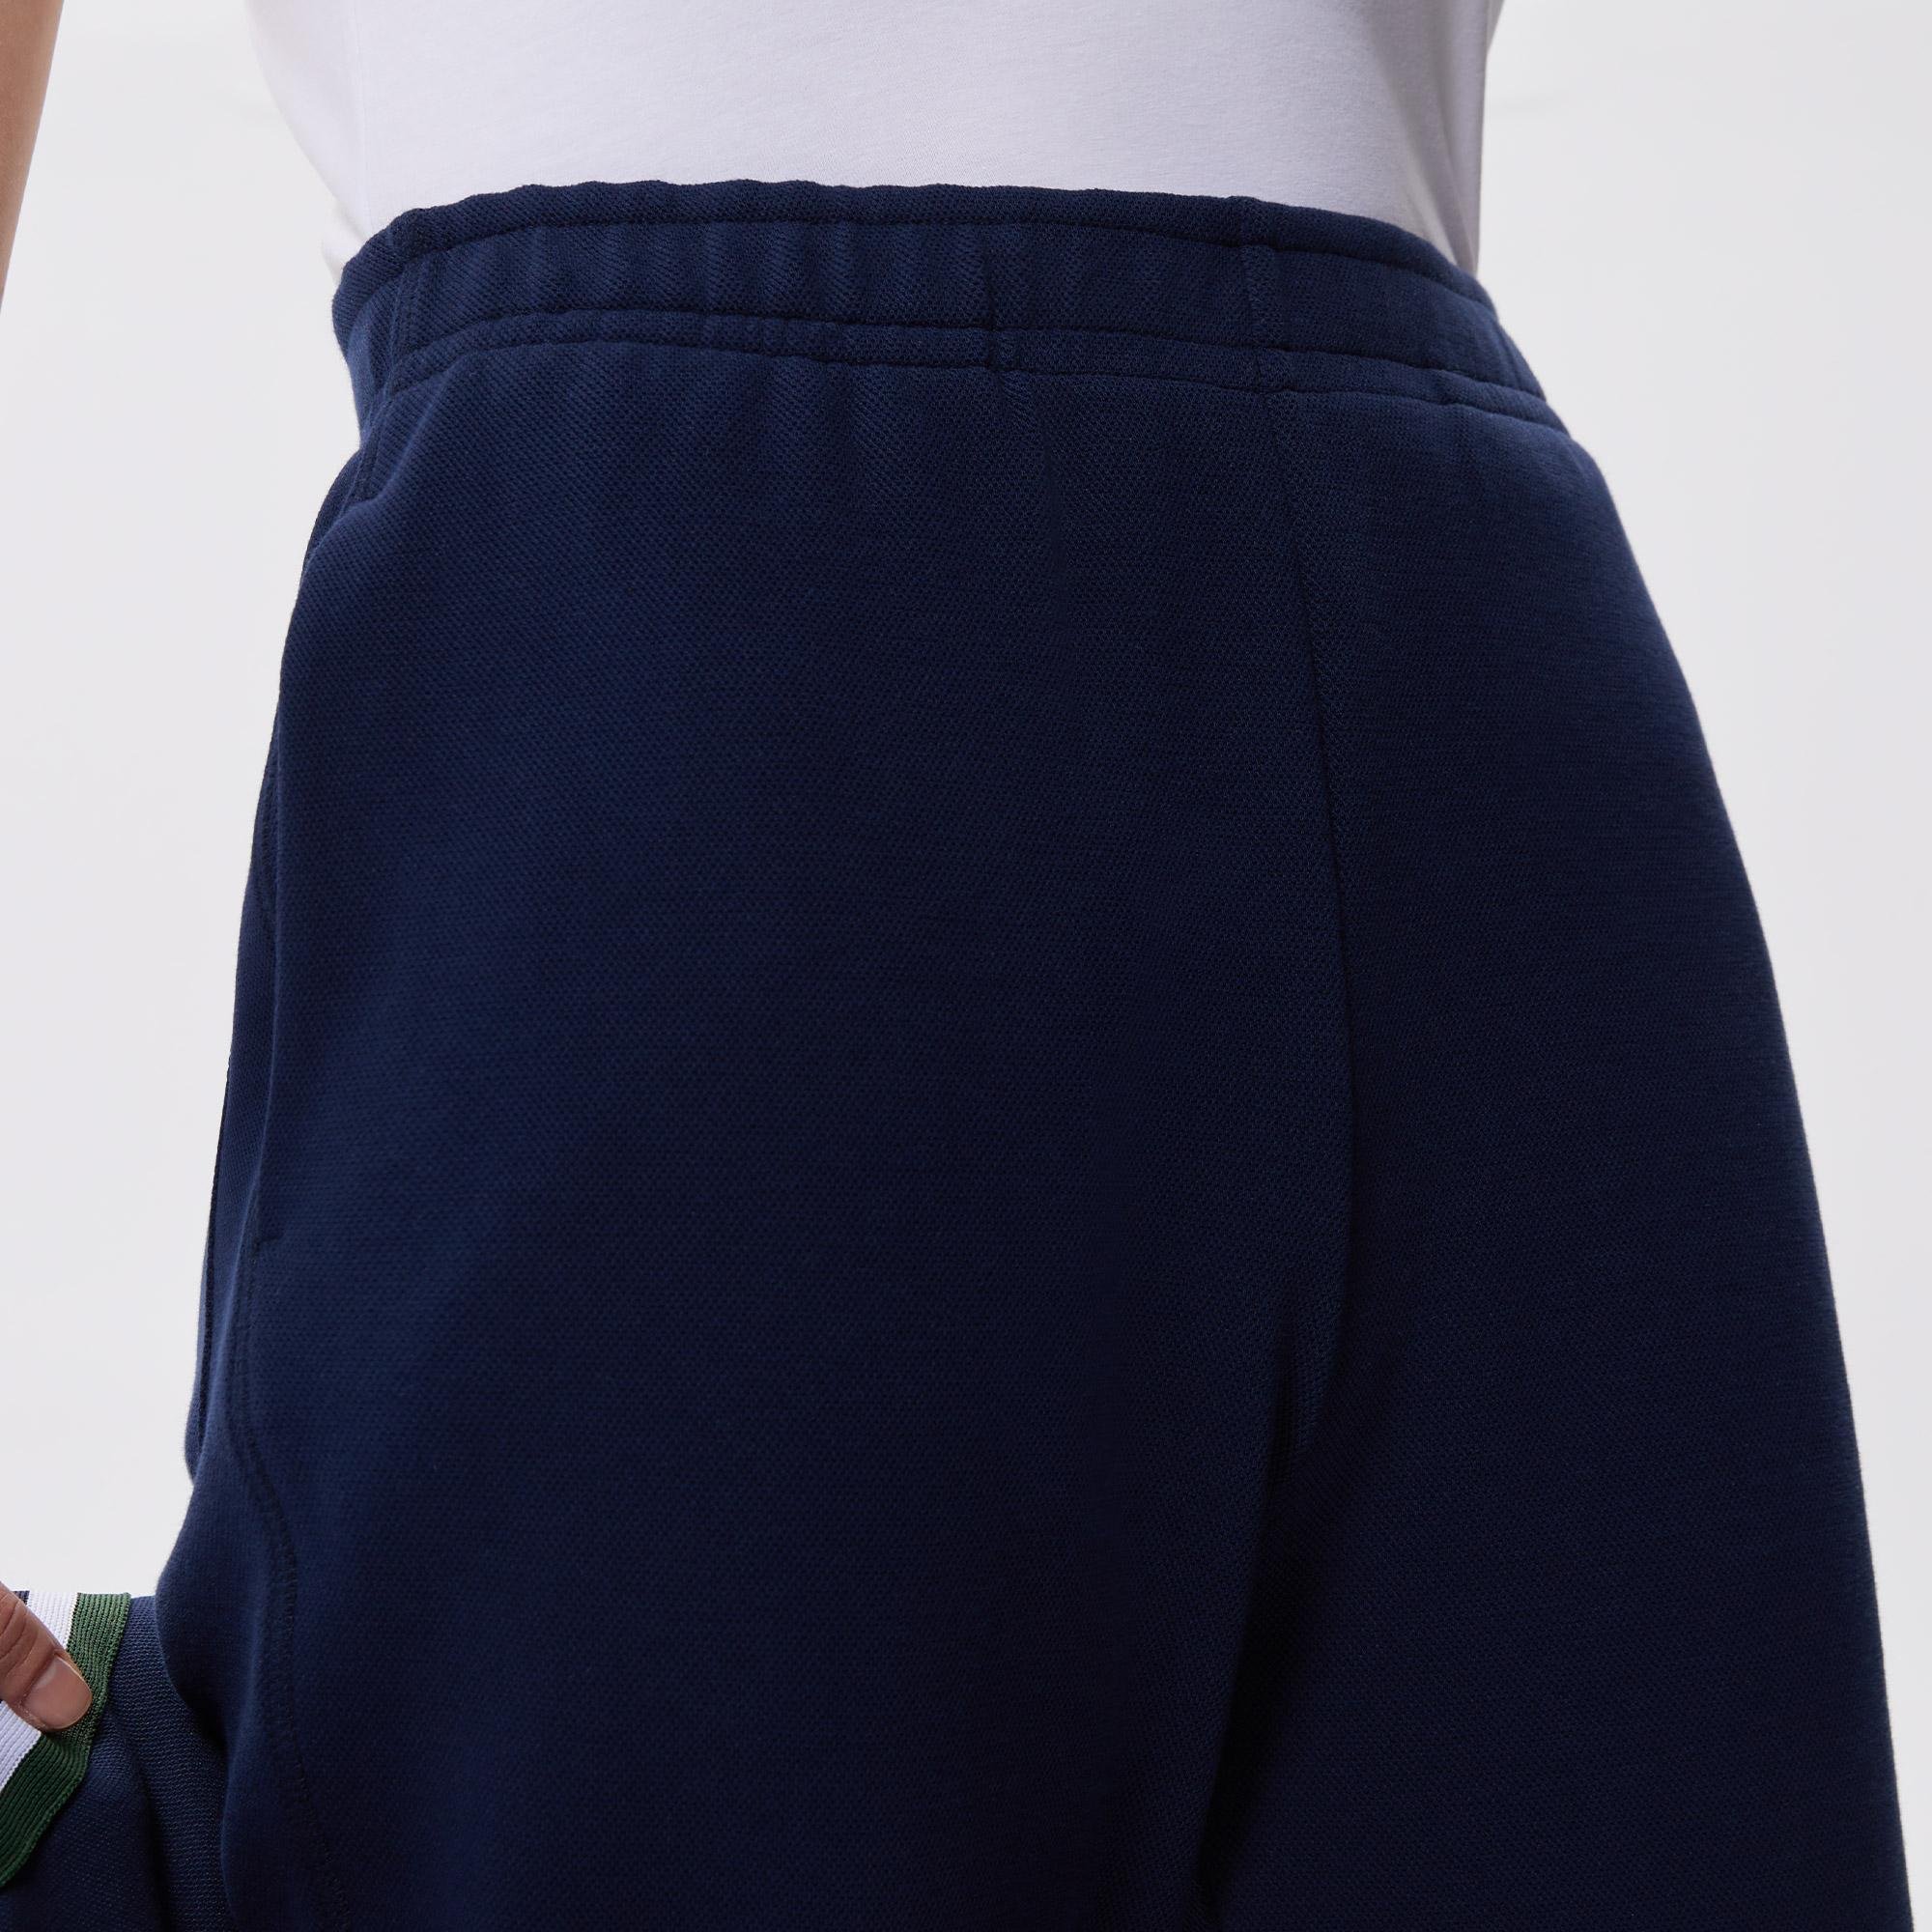 Lacoste dámské běžecké kalhoty ze směsi bavlny